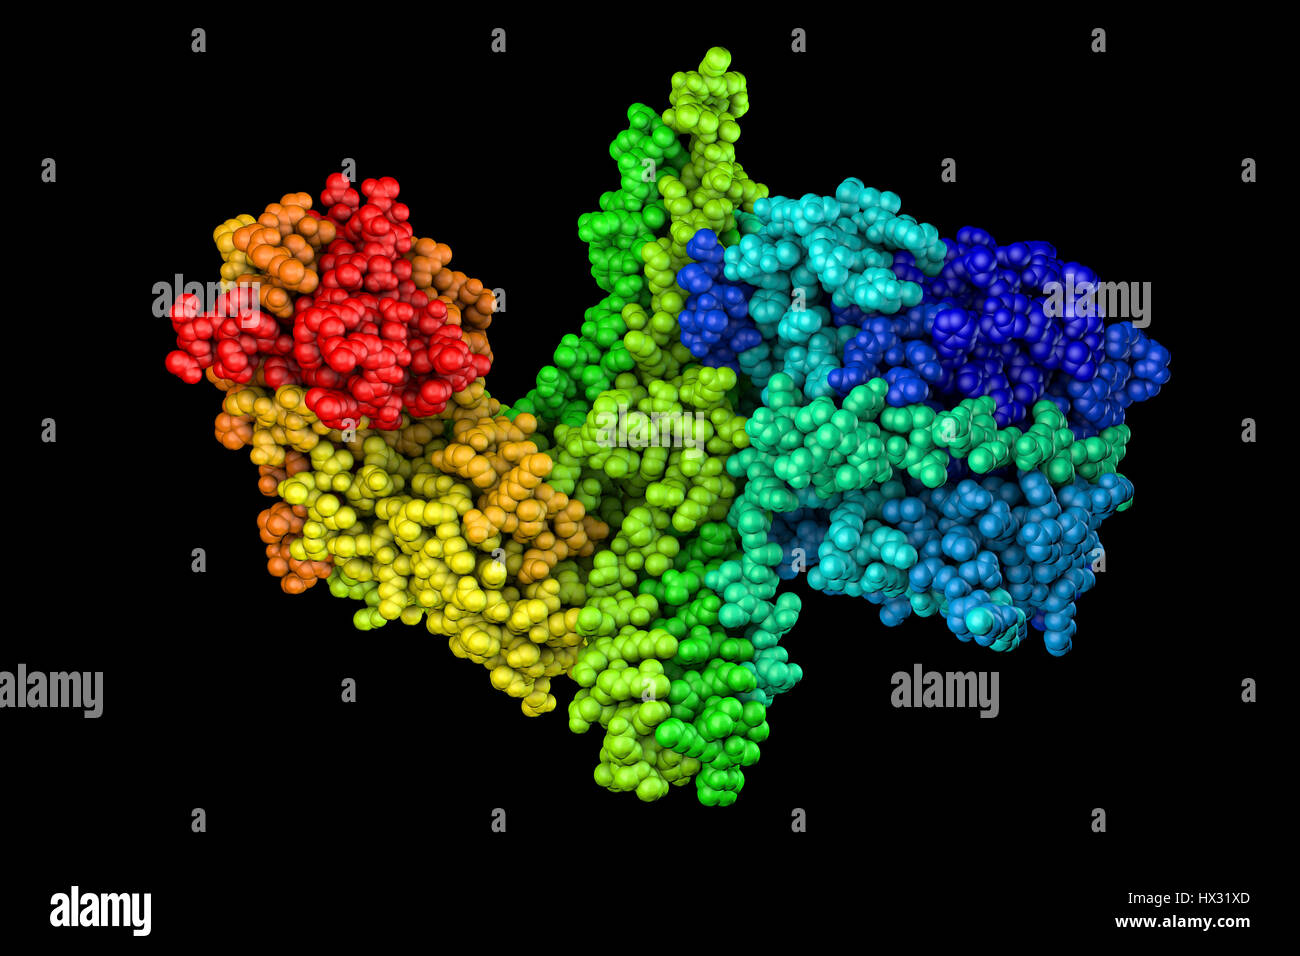 Computer-Modell zeigt die Struktur eines Moleküls von Nervengift Botulinumtoxin (BTX) Typ A. Diese neurotoxische Protein wird durch das Bakterium Clostridium Botulinum produziert und verwandten Arten. Es wird auch kommerziell produziert für Medizin-, Kosmetik- und Forschungszwecken, wo es in für die Behandlung von upper Motor Neuron Syndrom, fokale Hyperhidrose, Blepharospasmus, Strabismus, chronische Migräne und Bruxismus verwendet wird. Es ist auch weit verbreitet in kosmetische Behandlungen wie Botox-Injektionen. Stockfoto